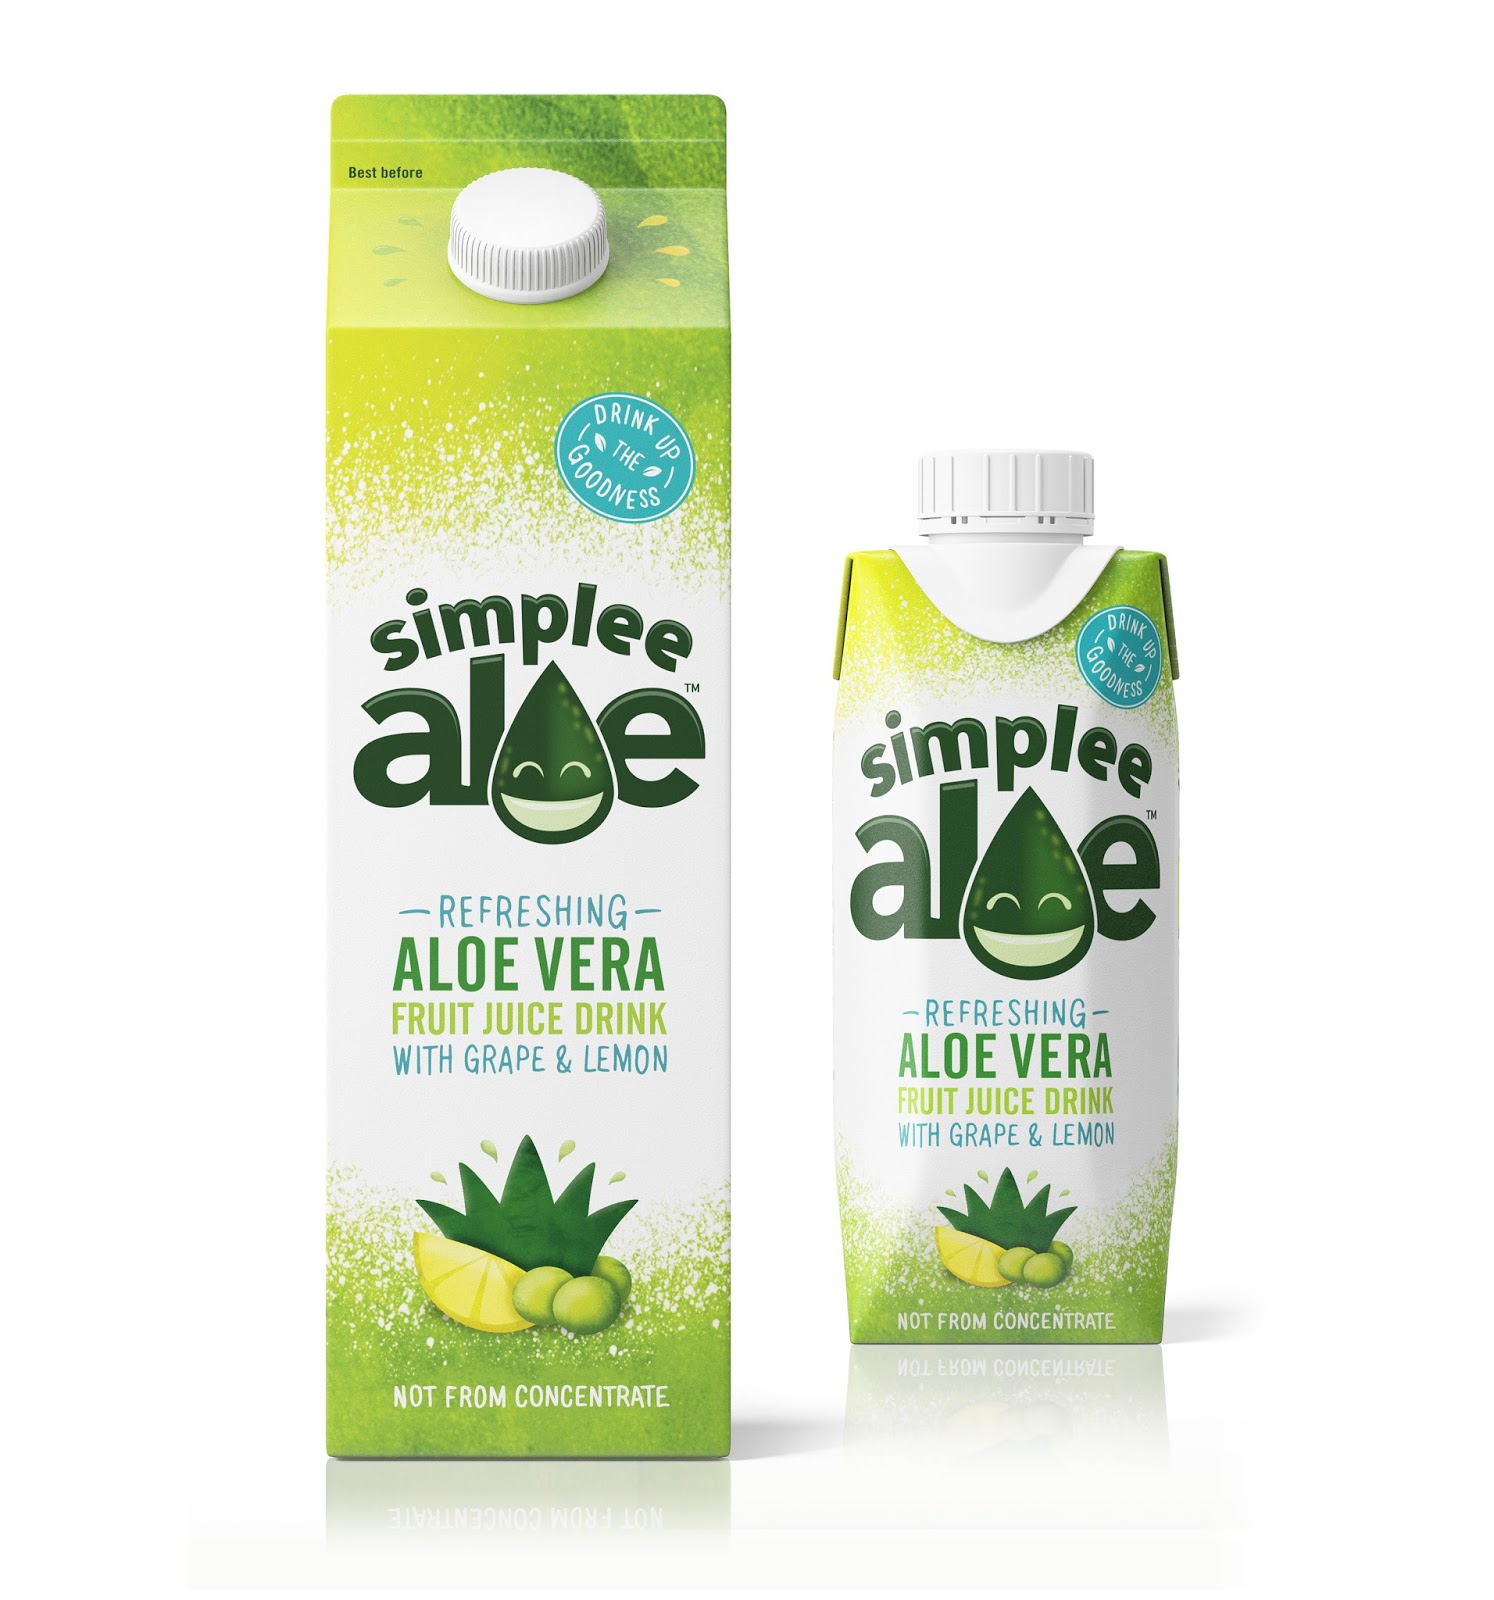 Джус лайн. Фрутинг алоэ. Aloe Vera Fruit. Aloe Vera best Drink. Aloe Vera Drink Design.